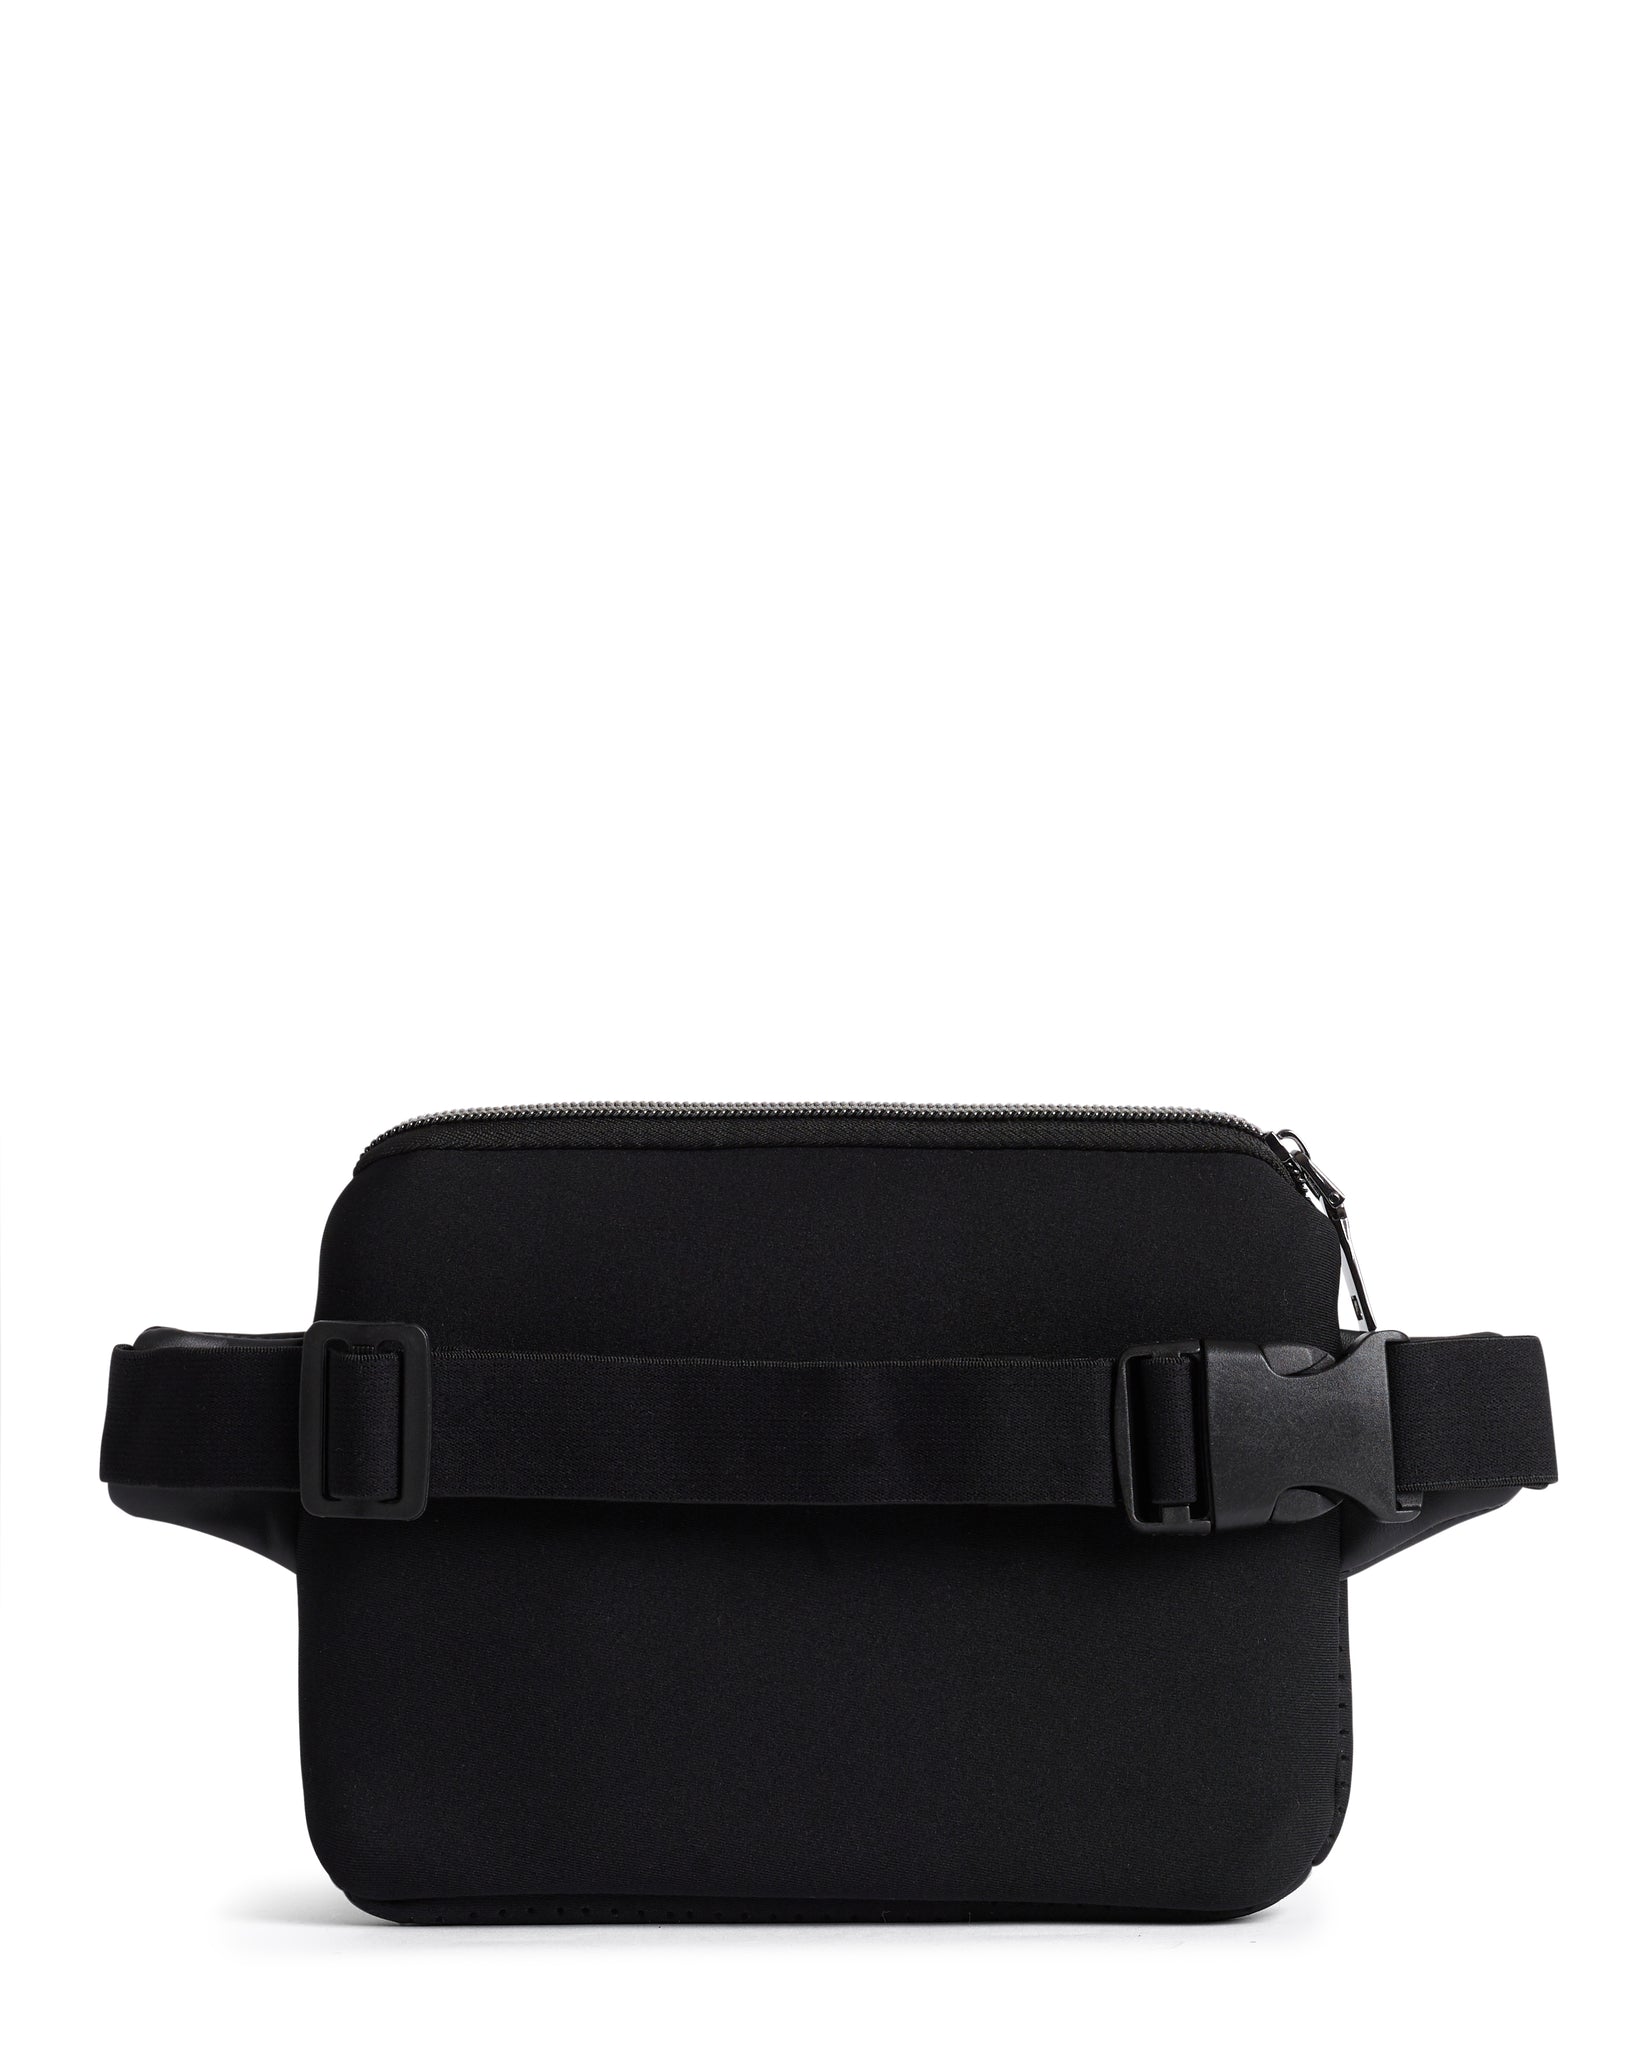 The Bum / Waist / Chest Bag (BLACK) Neoprene Bag – Prene